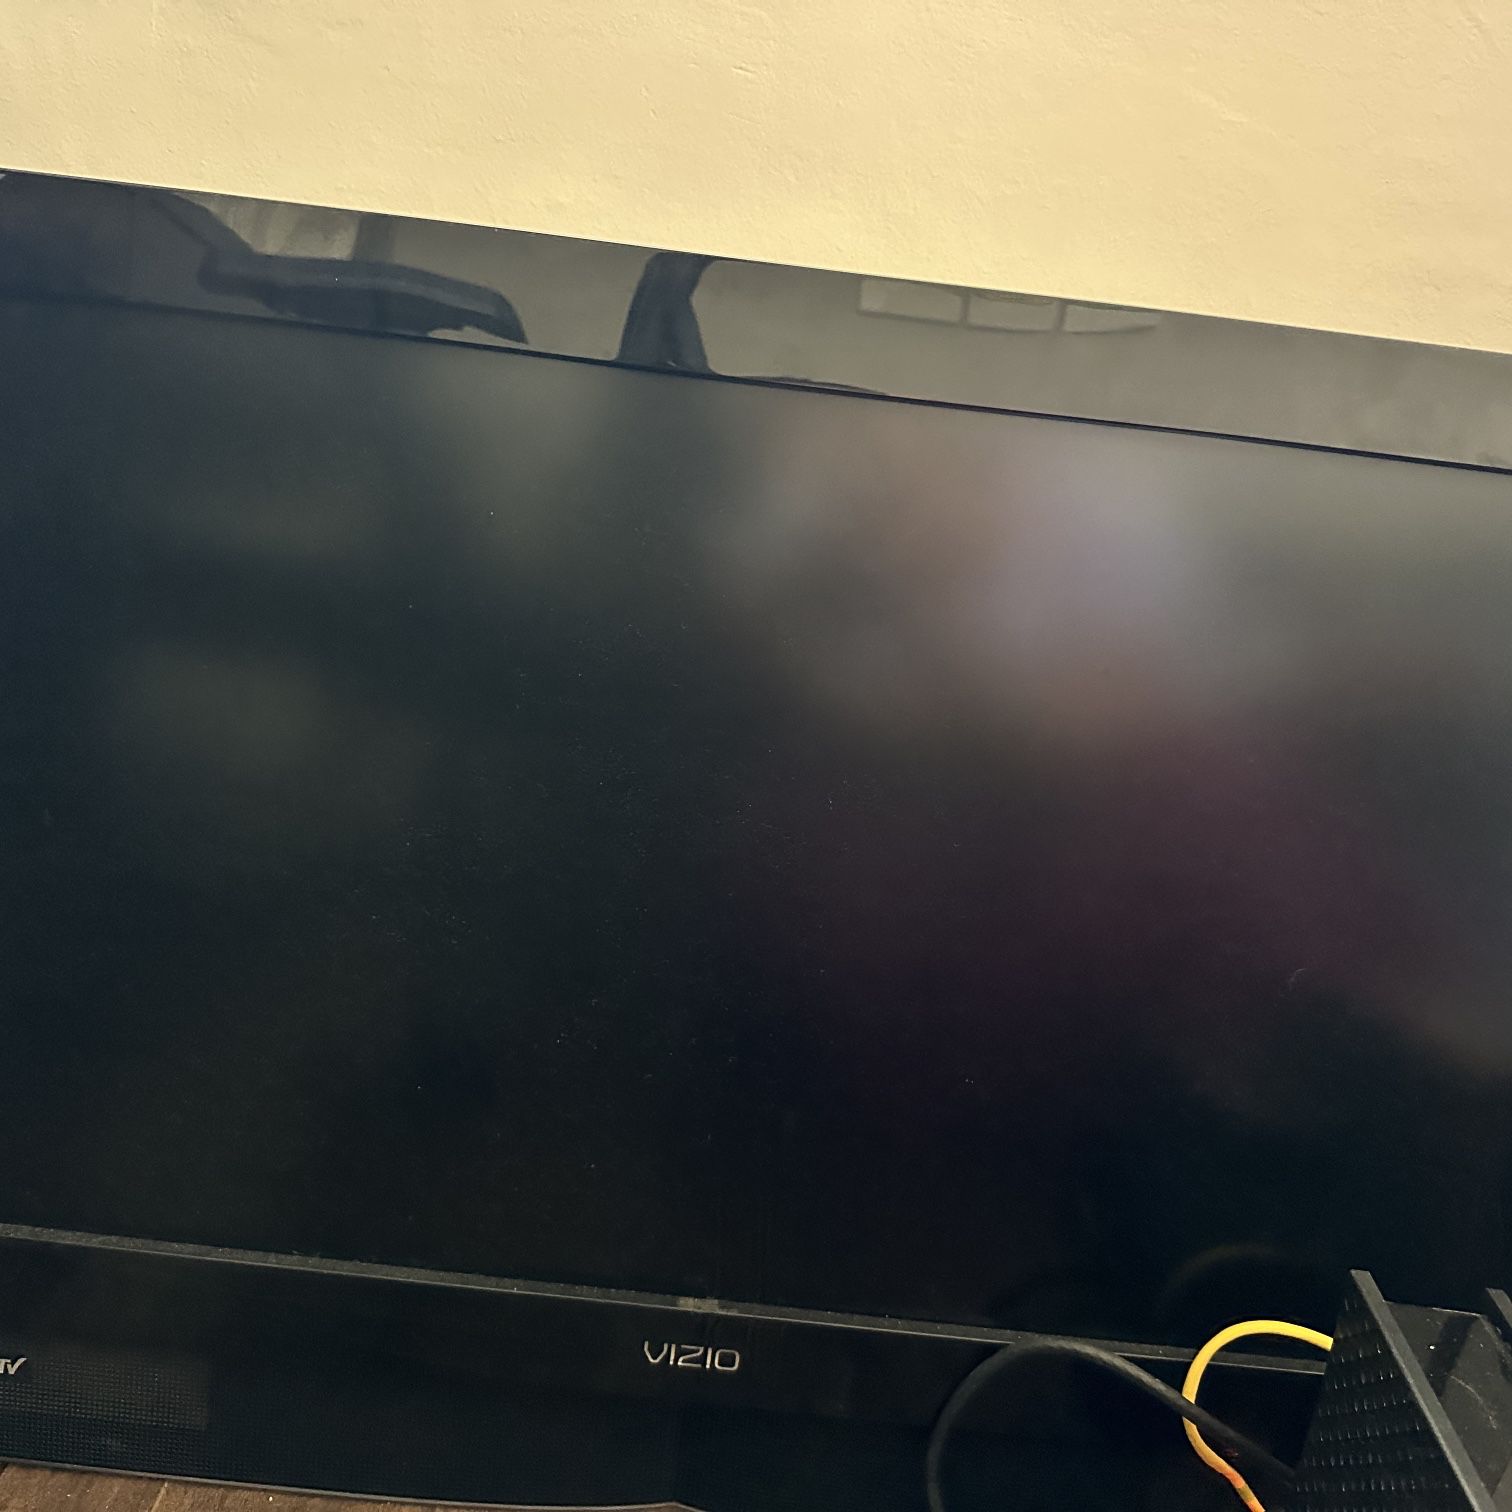 32-inch LCD TV